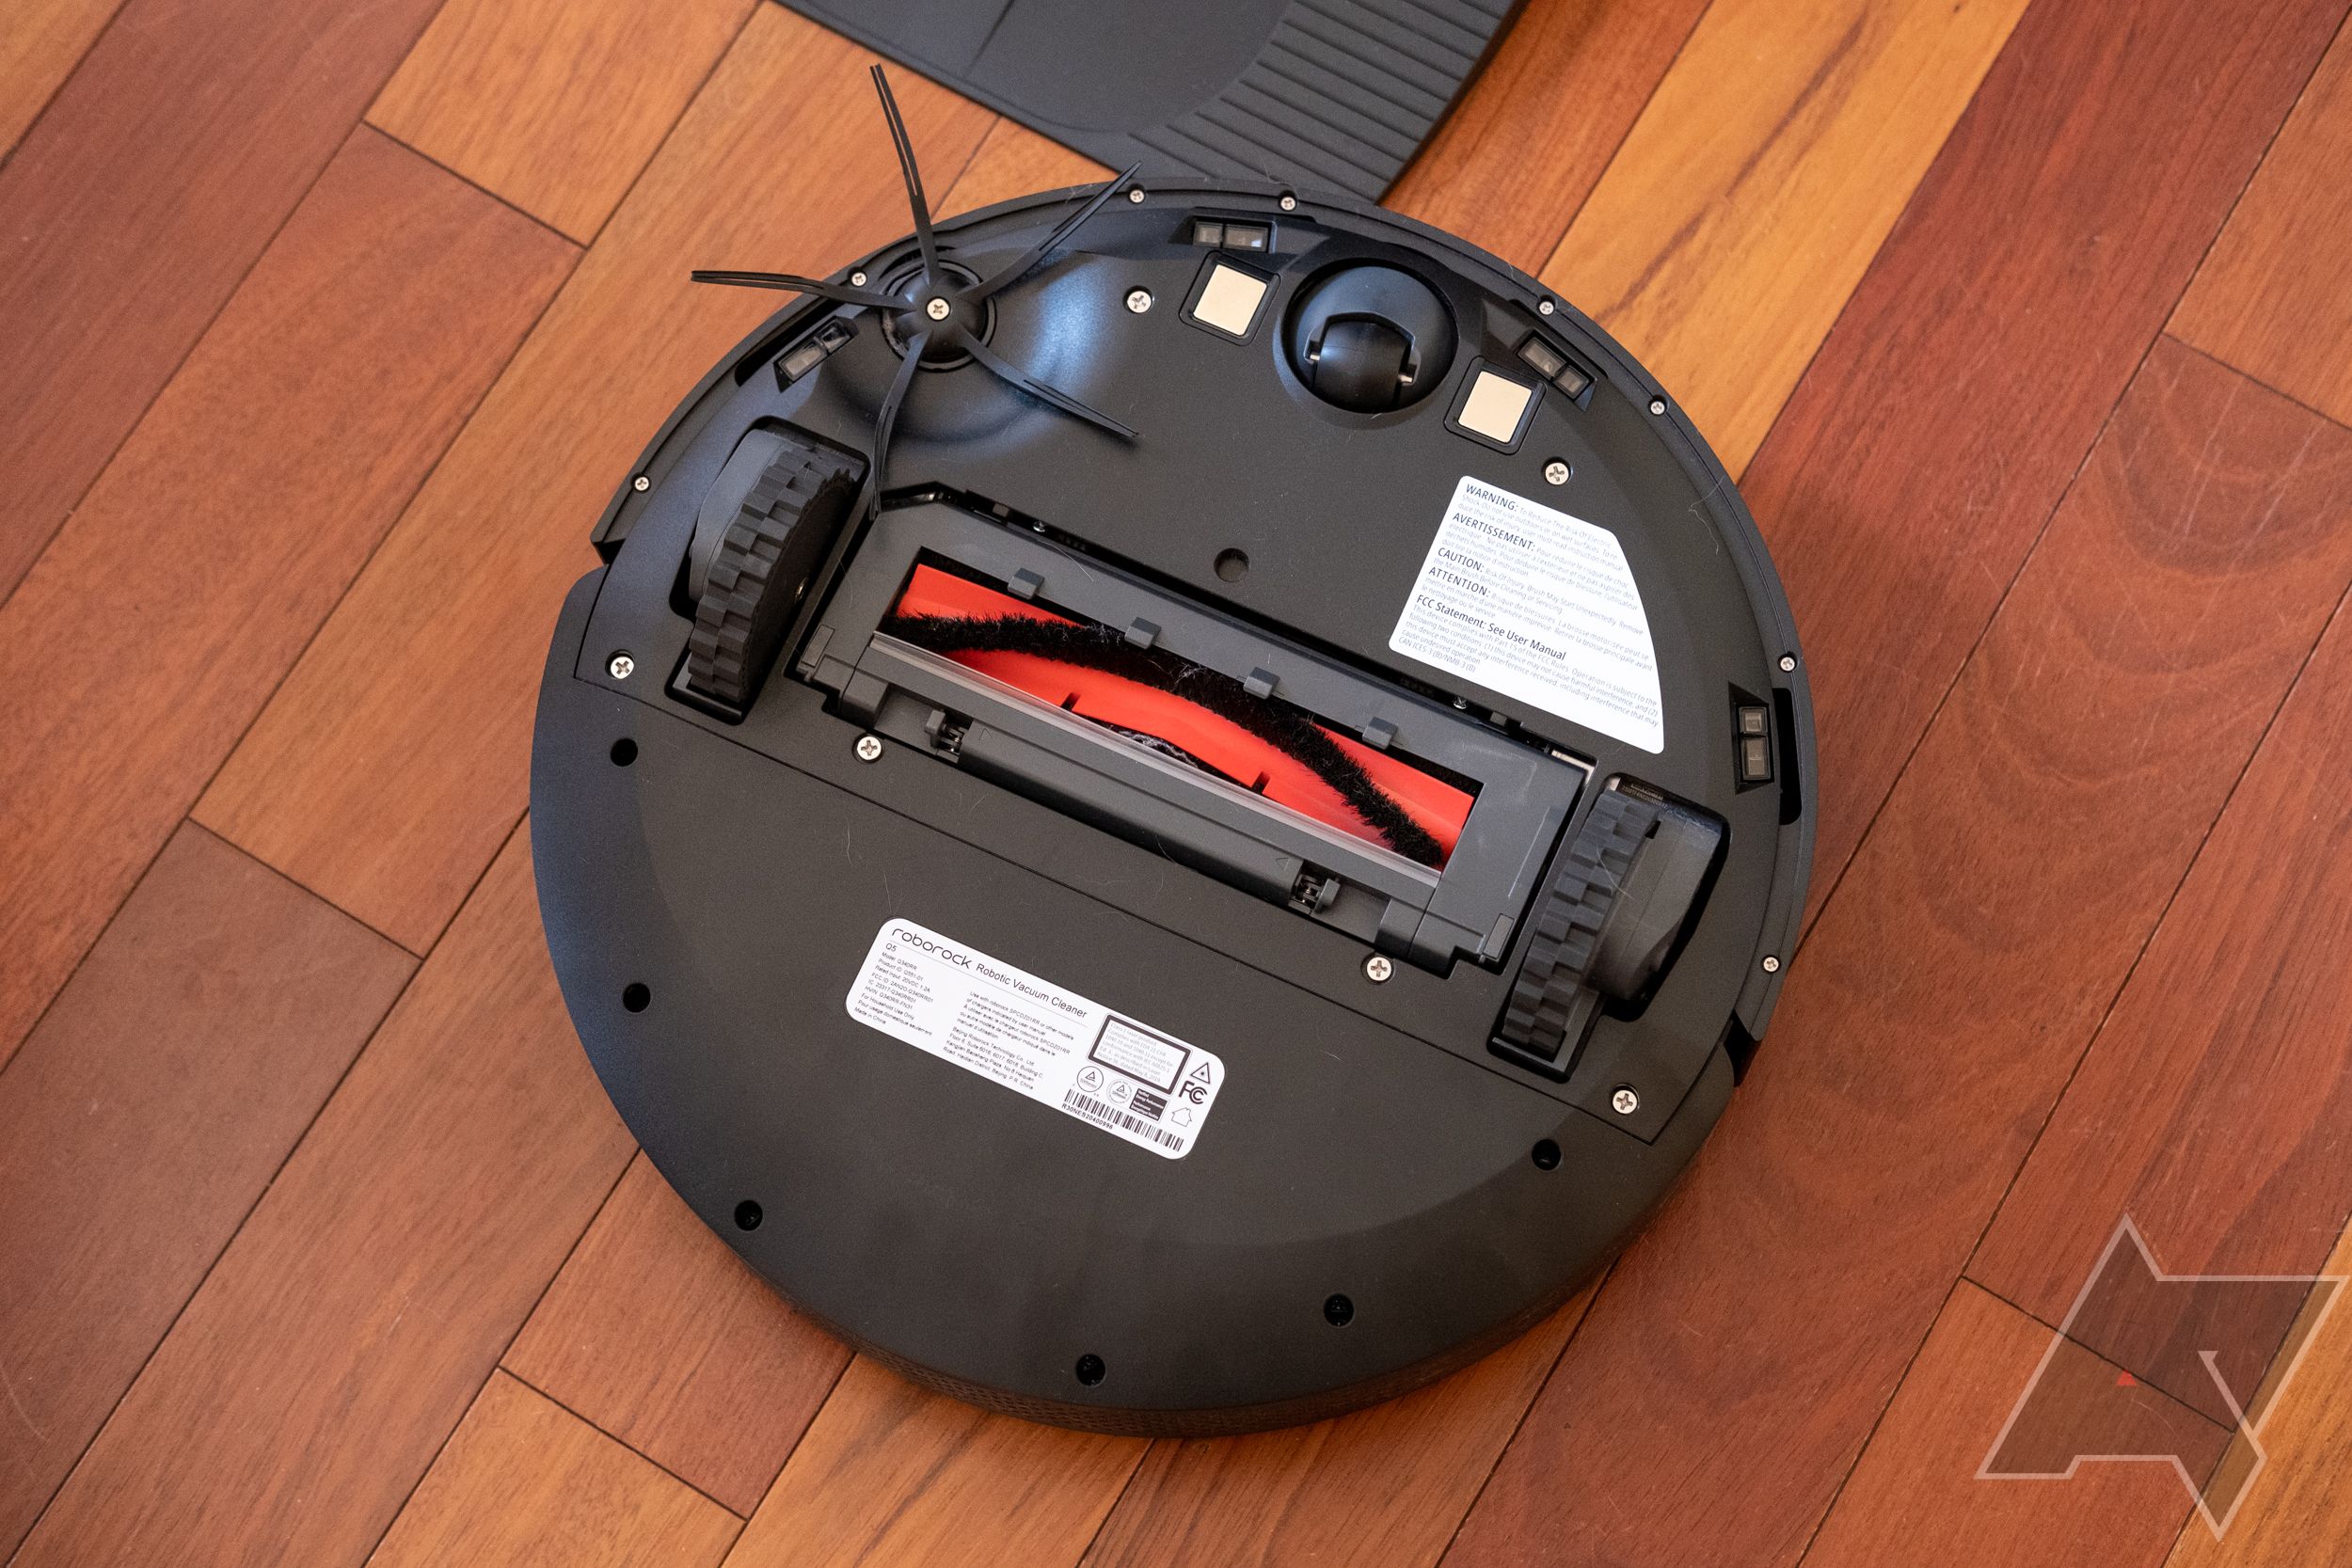 Roborock Q5 Review: A Powerful, Convenient Robot Vacuum